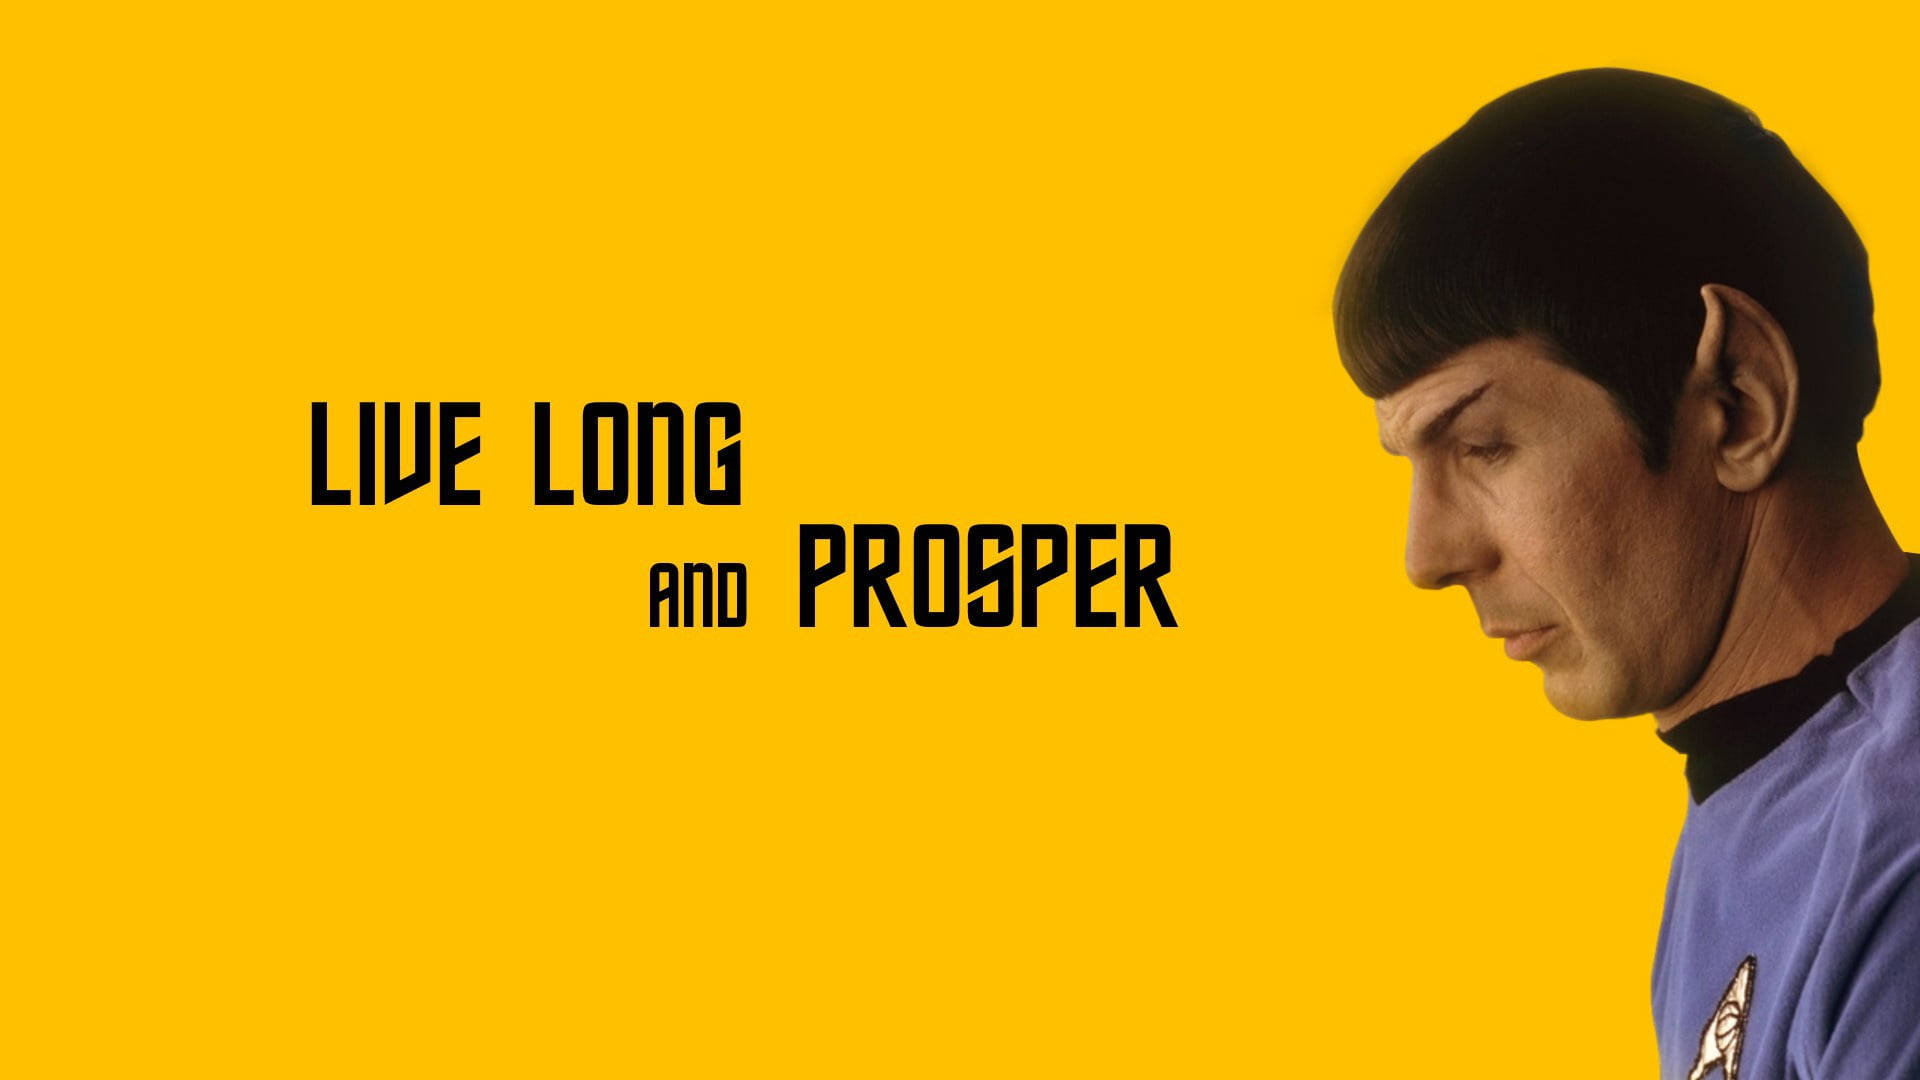 Leonard Nimoy Live Long And Prosper Poster Wallpaper